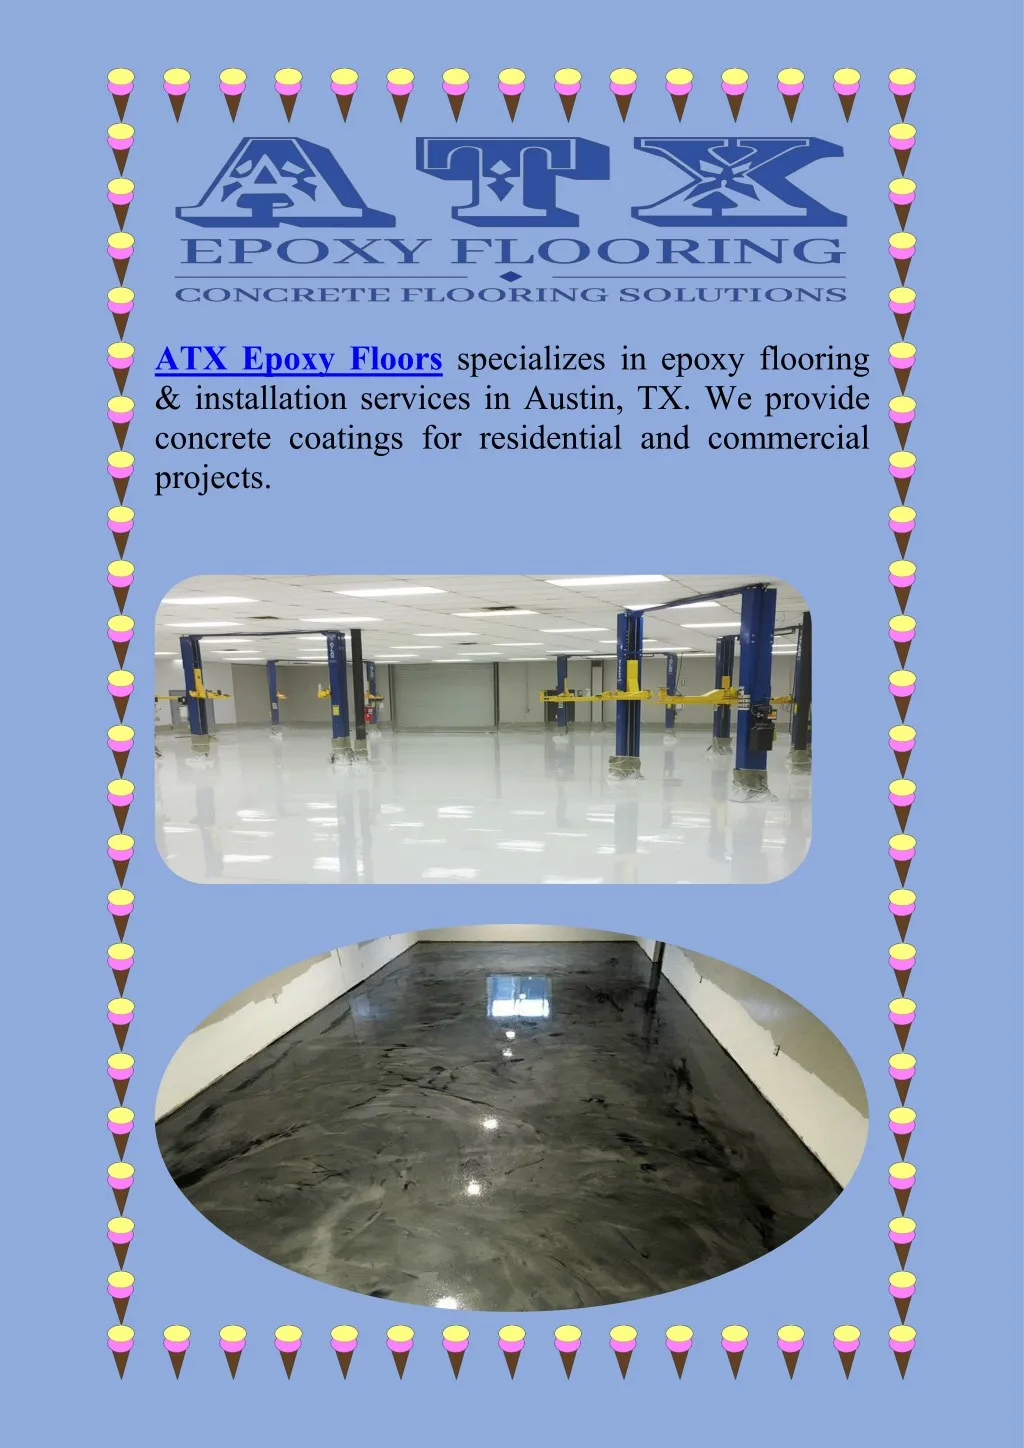 atx epoxy floors specializes in epoxy flooring